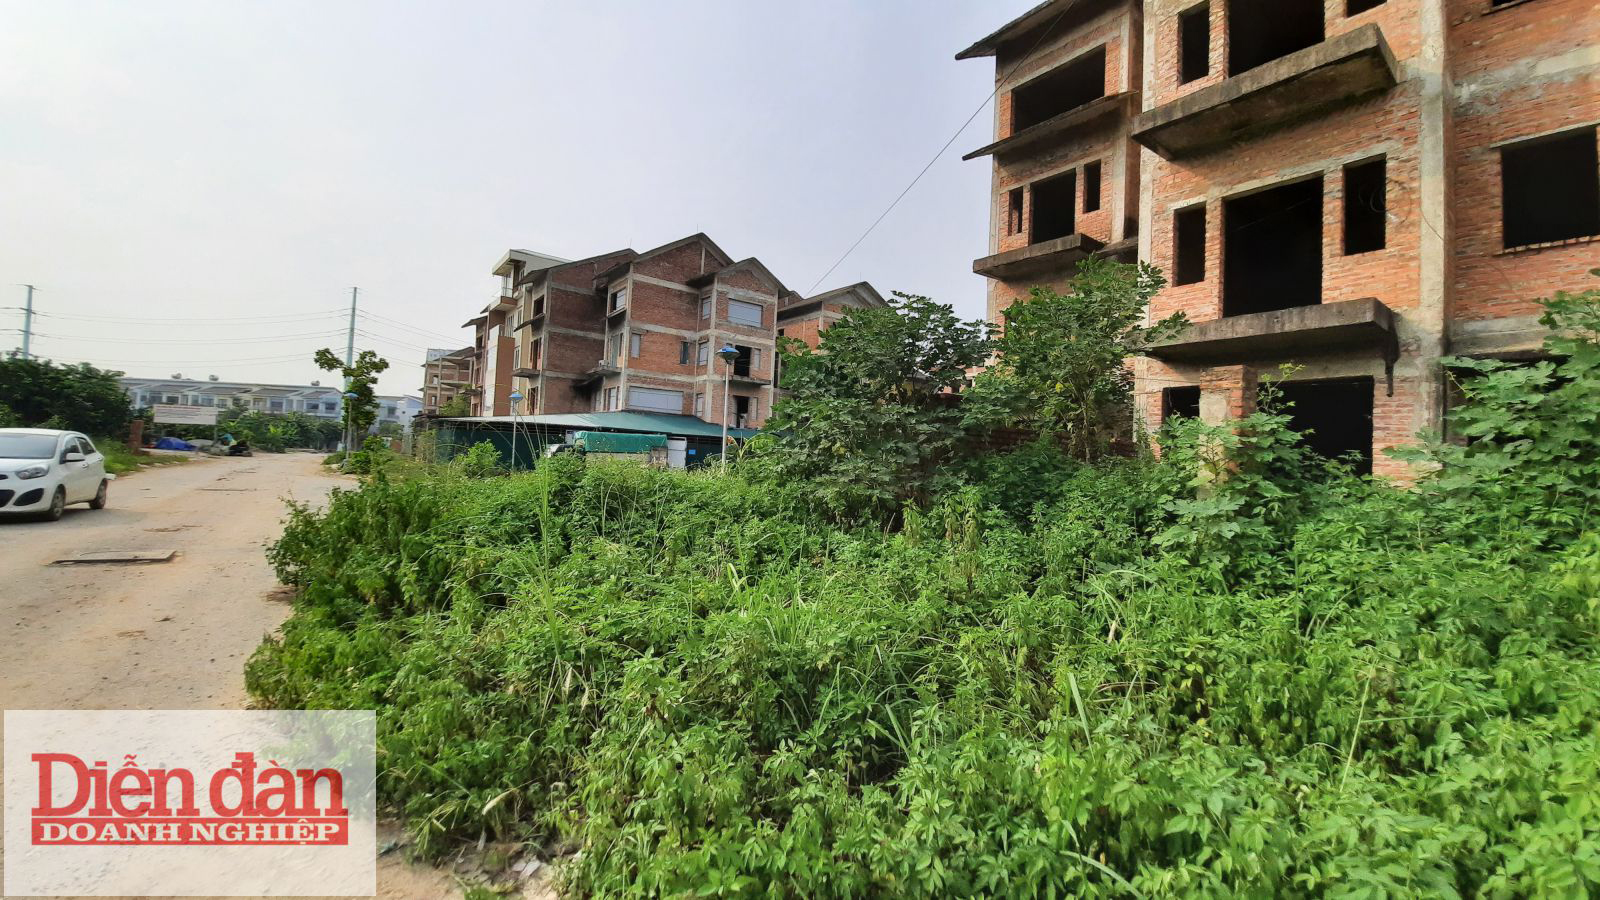  Biệt thự bỏ hoang tại Hà Nội ngày một nhiều (Ảnh: Biệt thự bỏ hoang tại Foresa Villa)